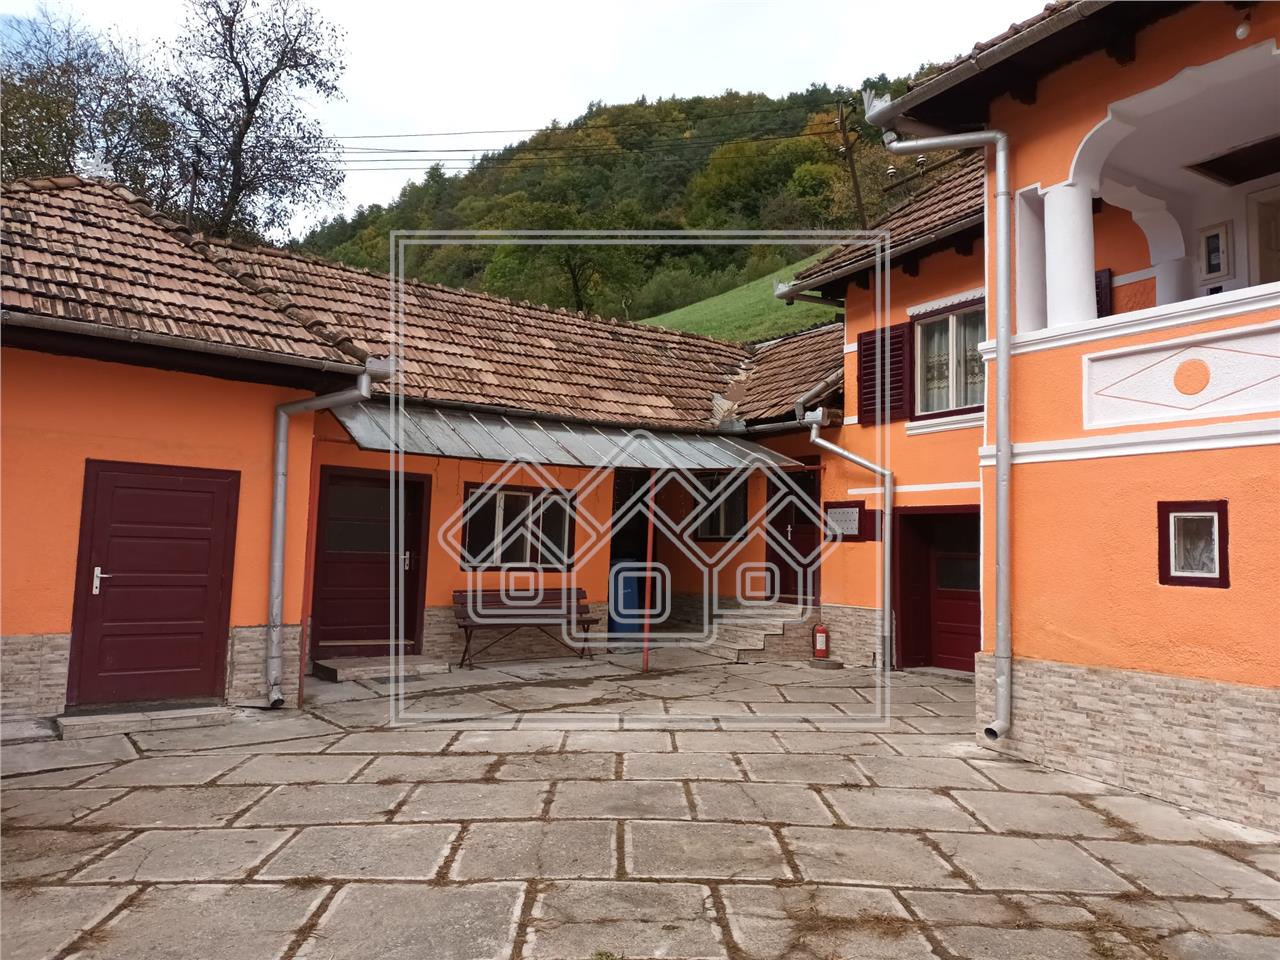 Pension for sale in Sibiu - Raul Sadului - 3408 sqm land